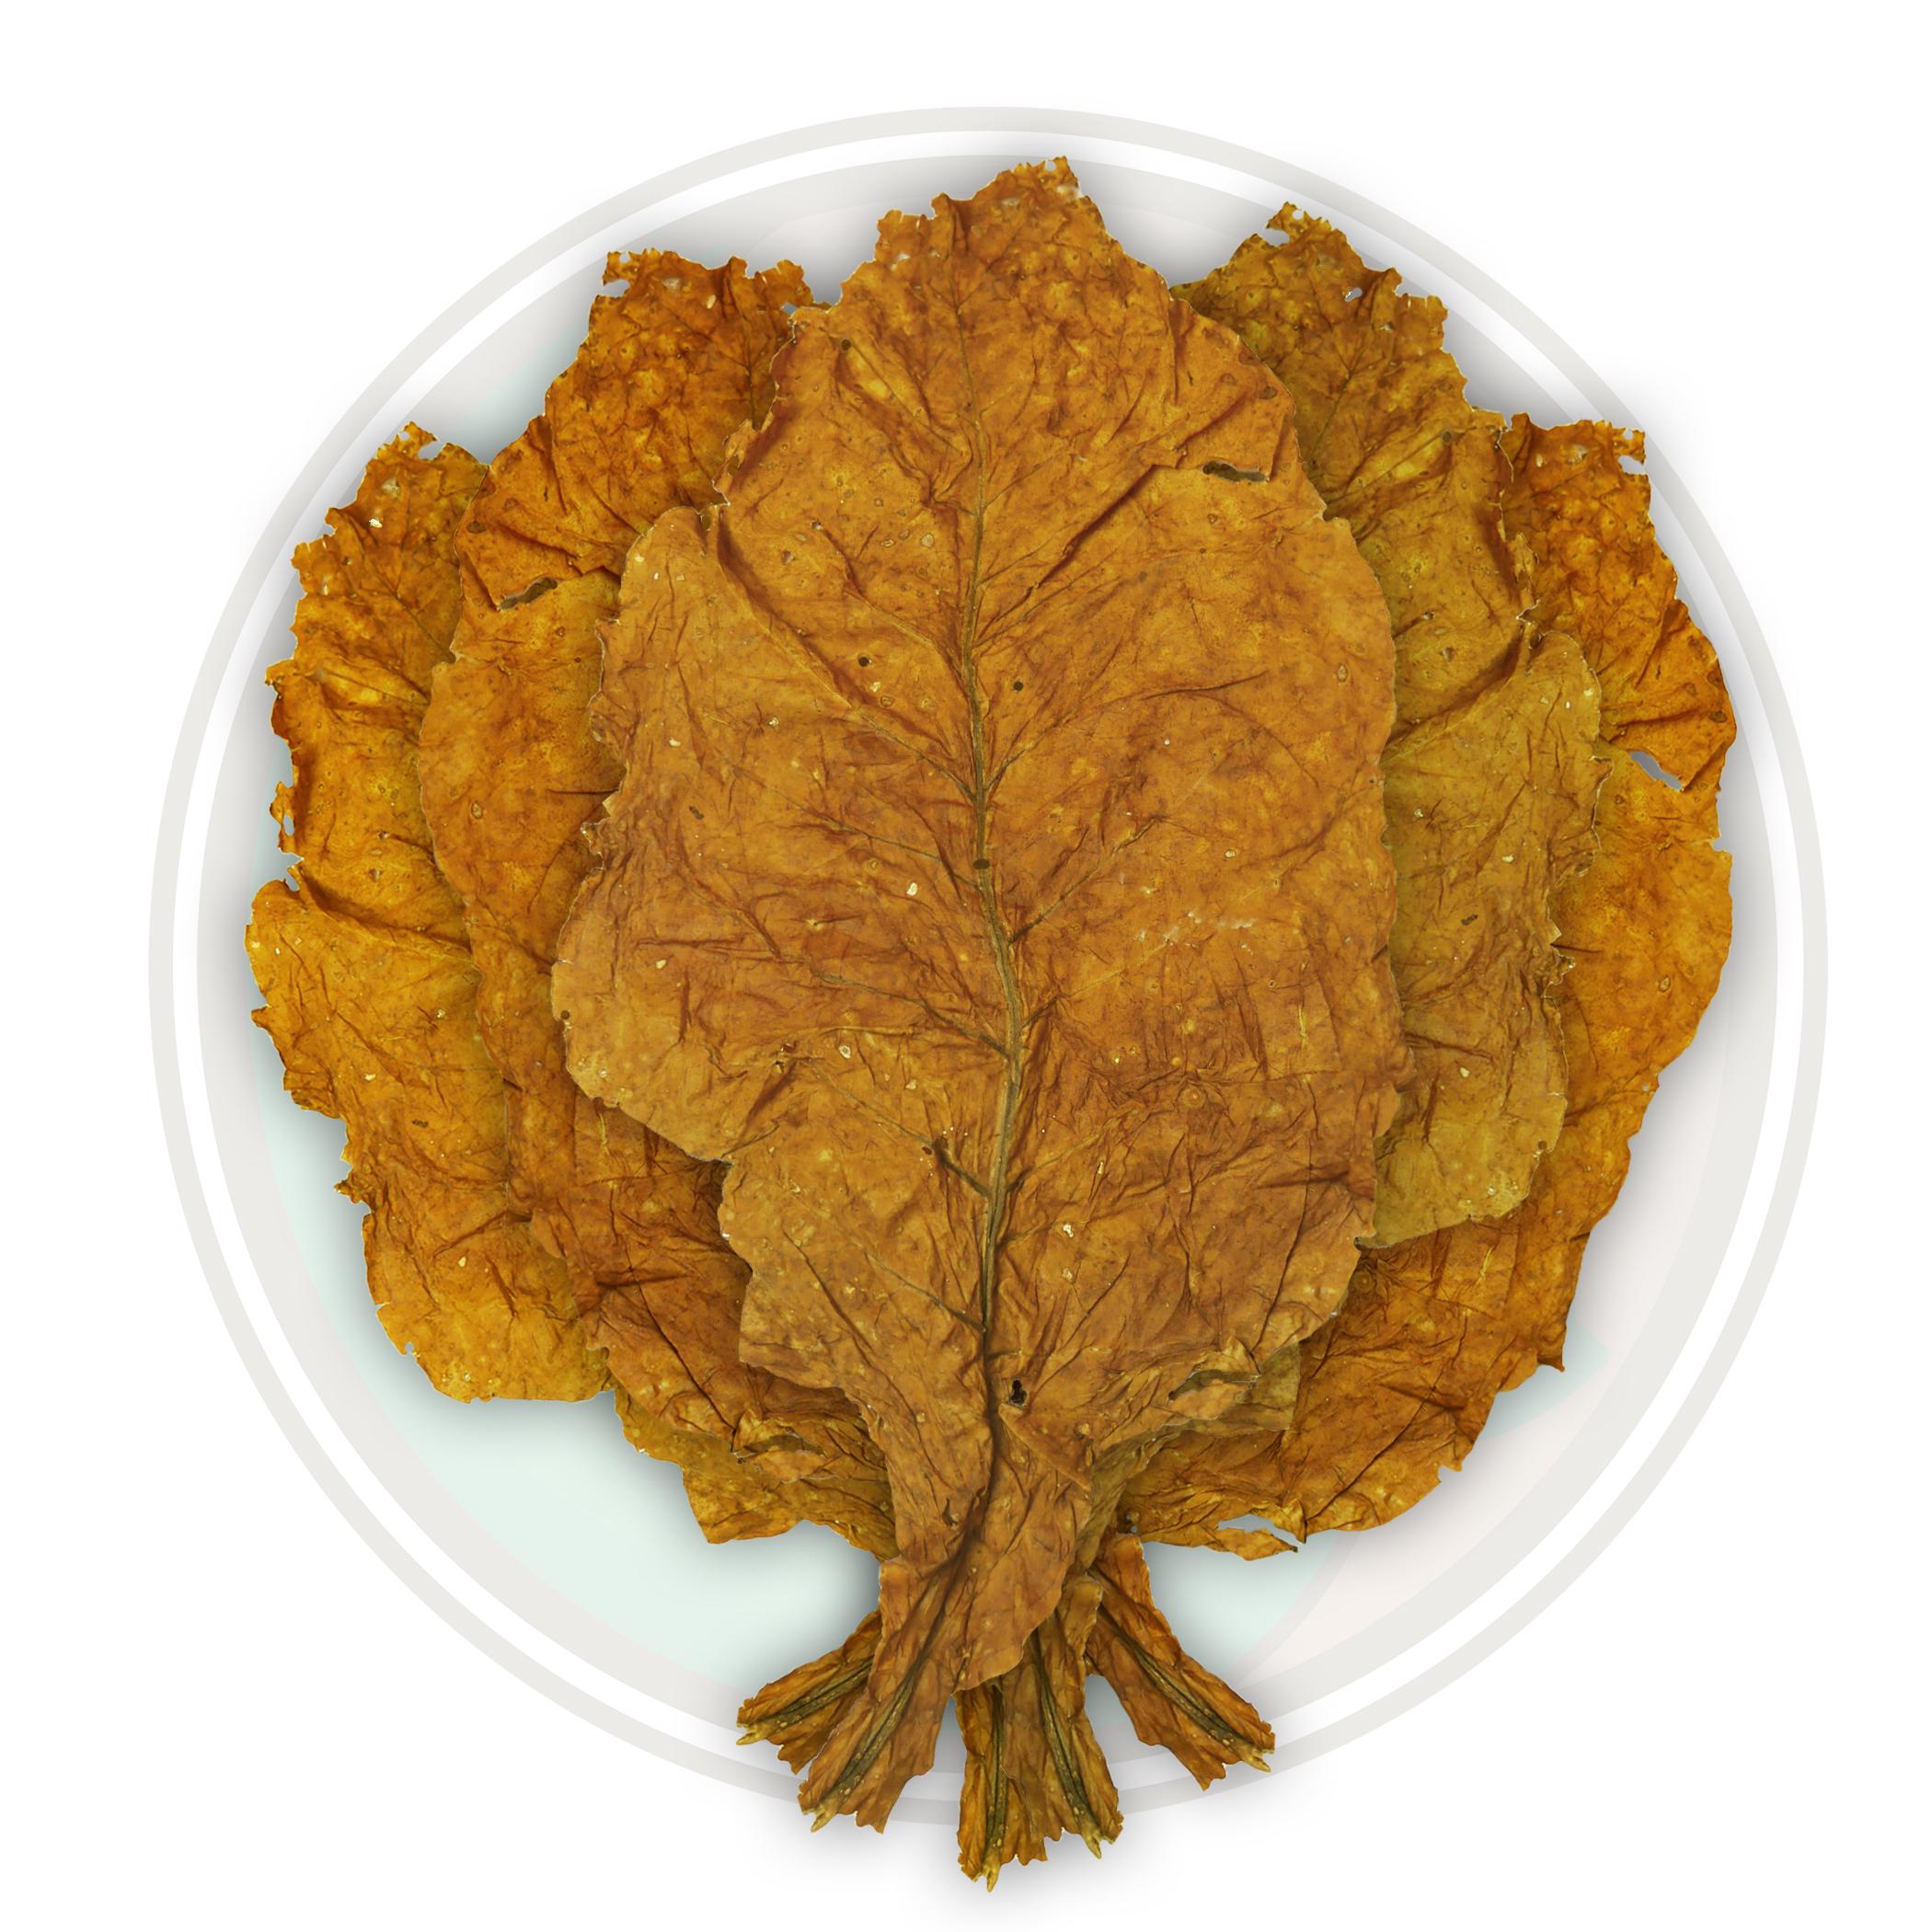 Organic American Virginia Flue Cured Whole Tobacco Leaf 